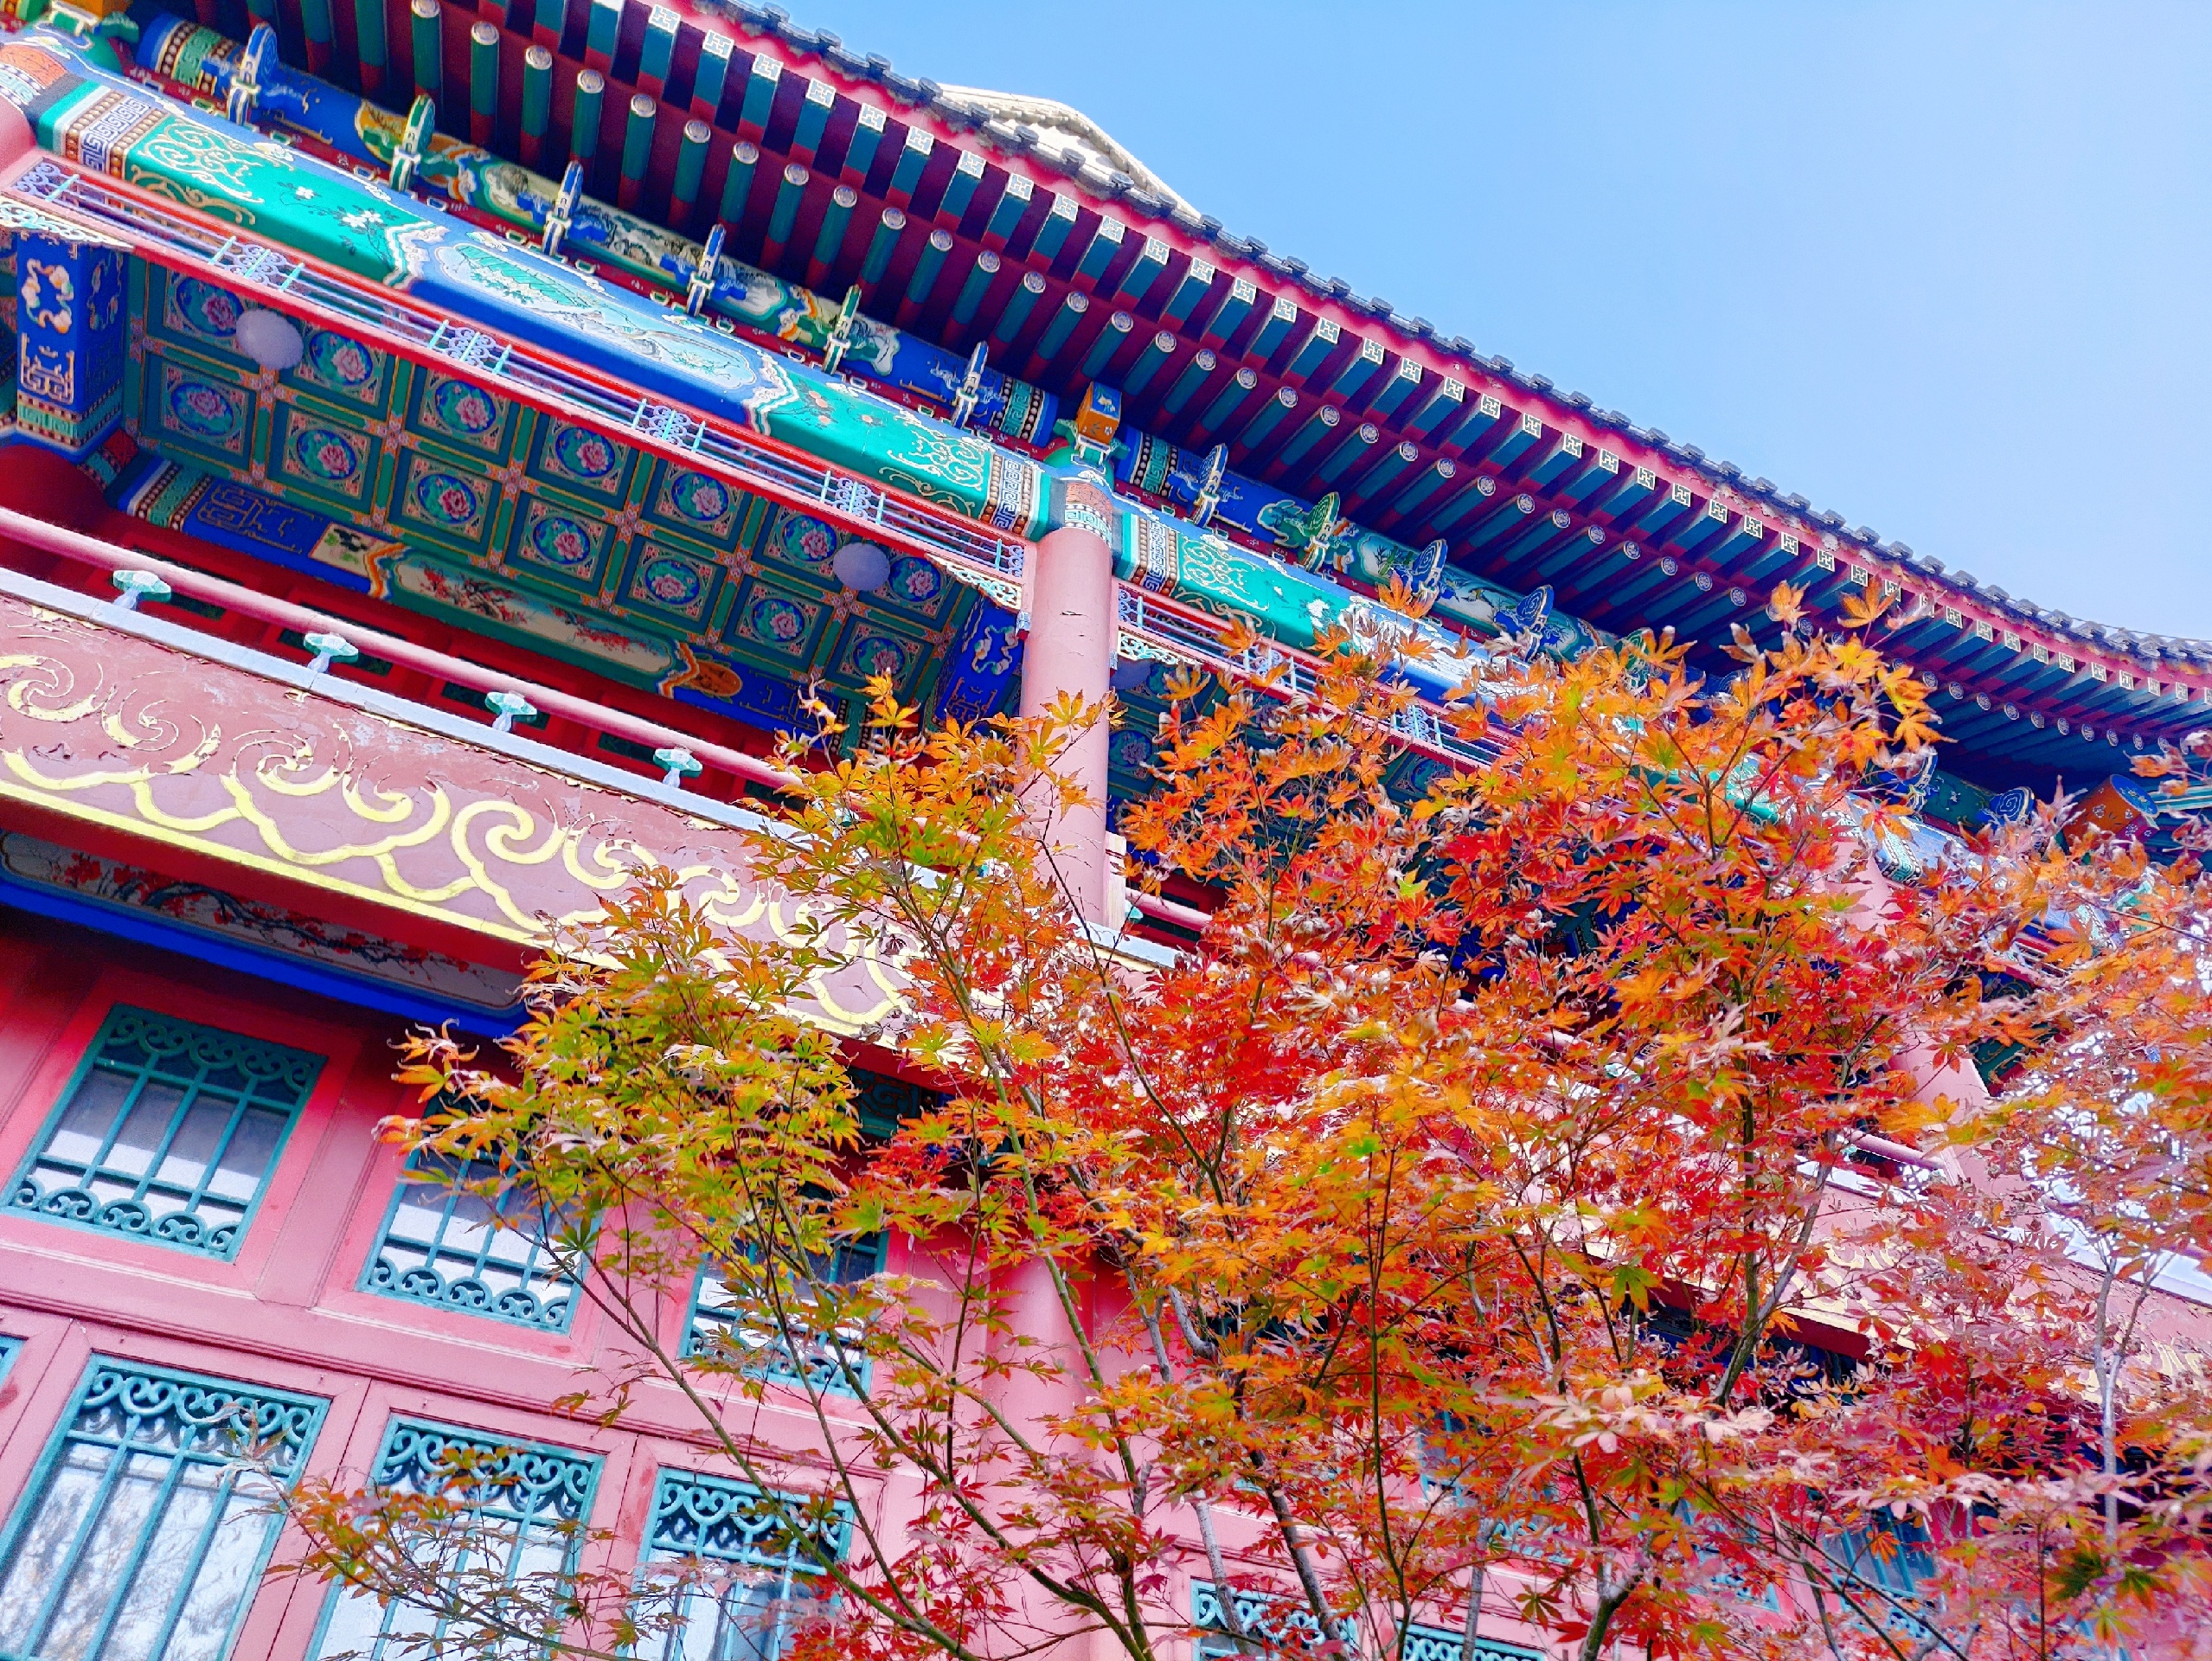 北京的秋 是最美的季节 一眼就爱了的感觉！中国园林博物馆赏秋